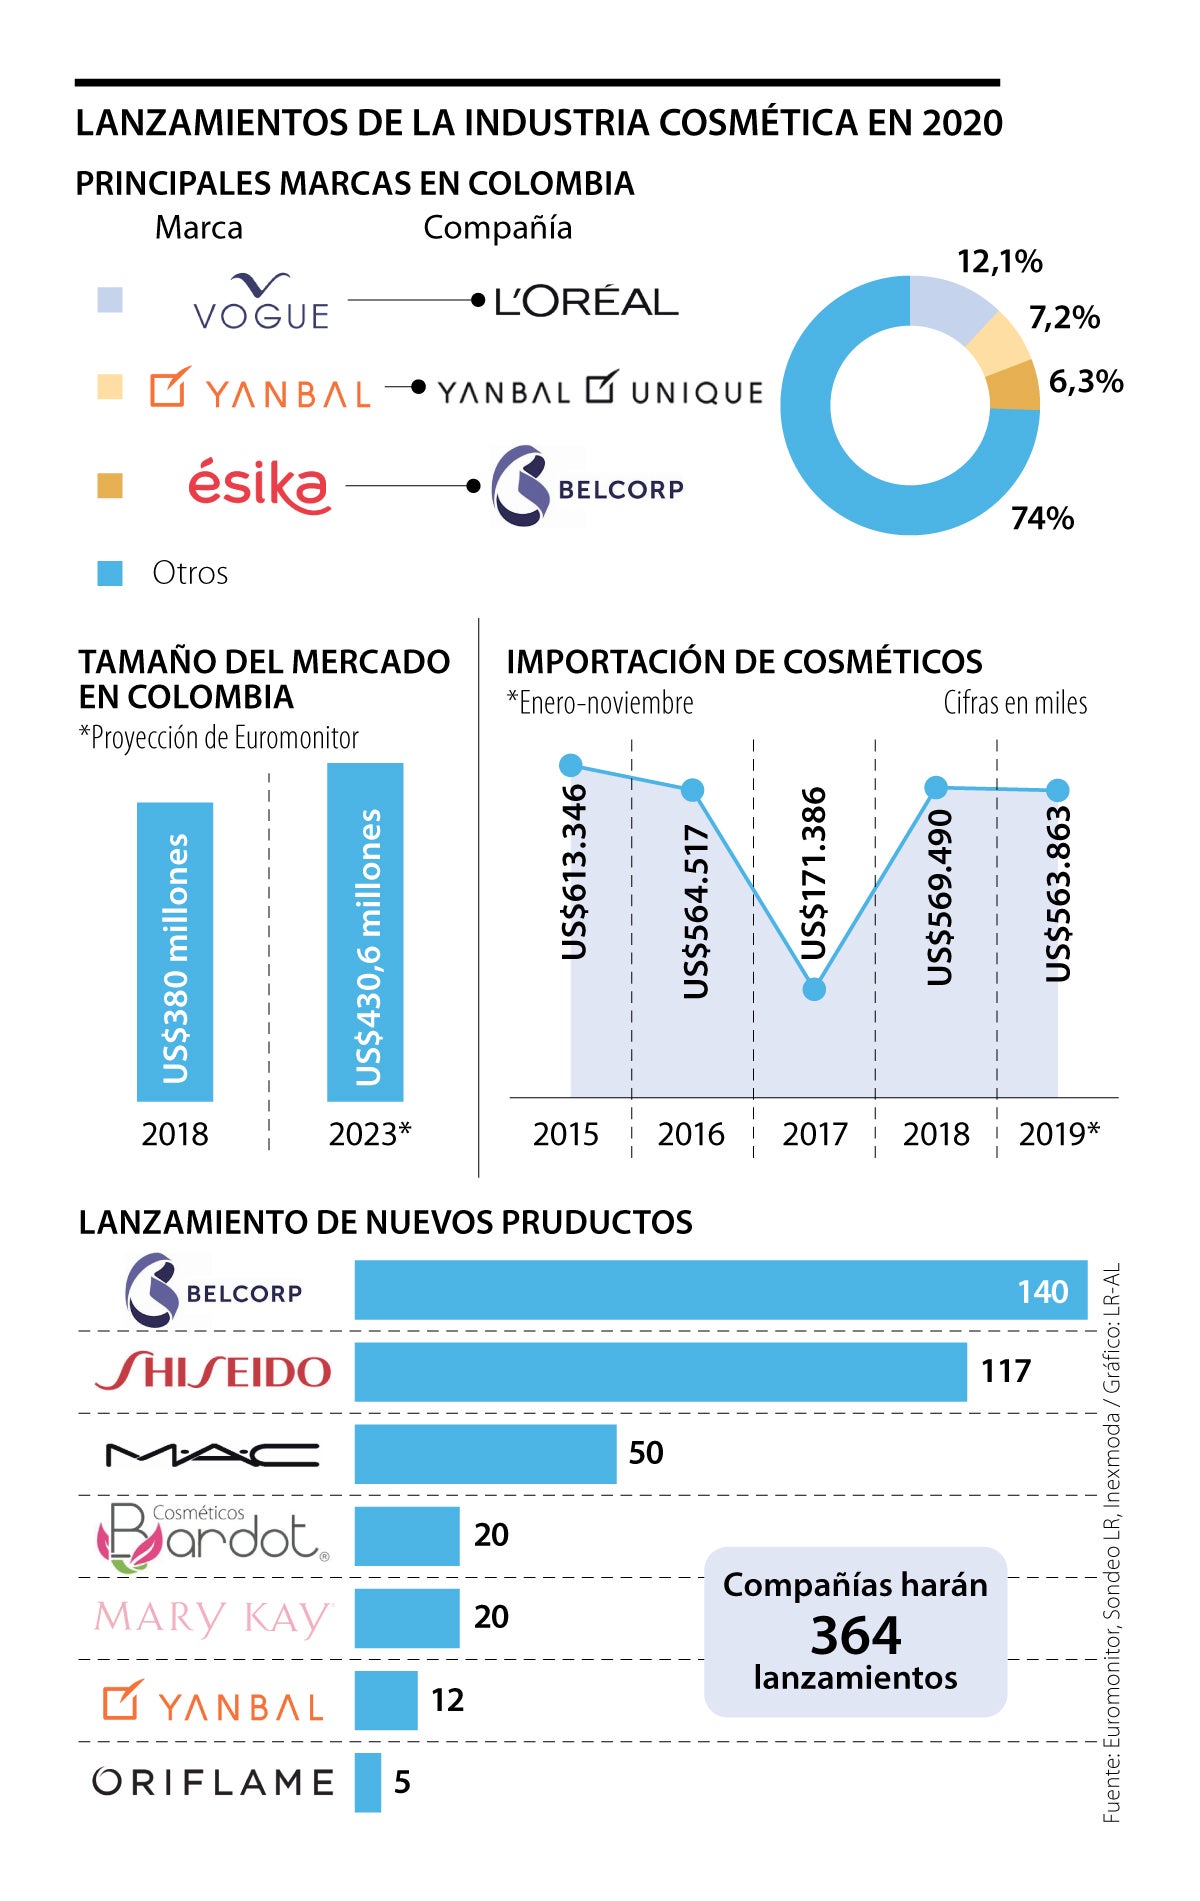 Compañías de maquillaje preparan hasta 364 lanzamientos para 2020 en  Colombia